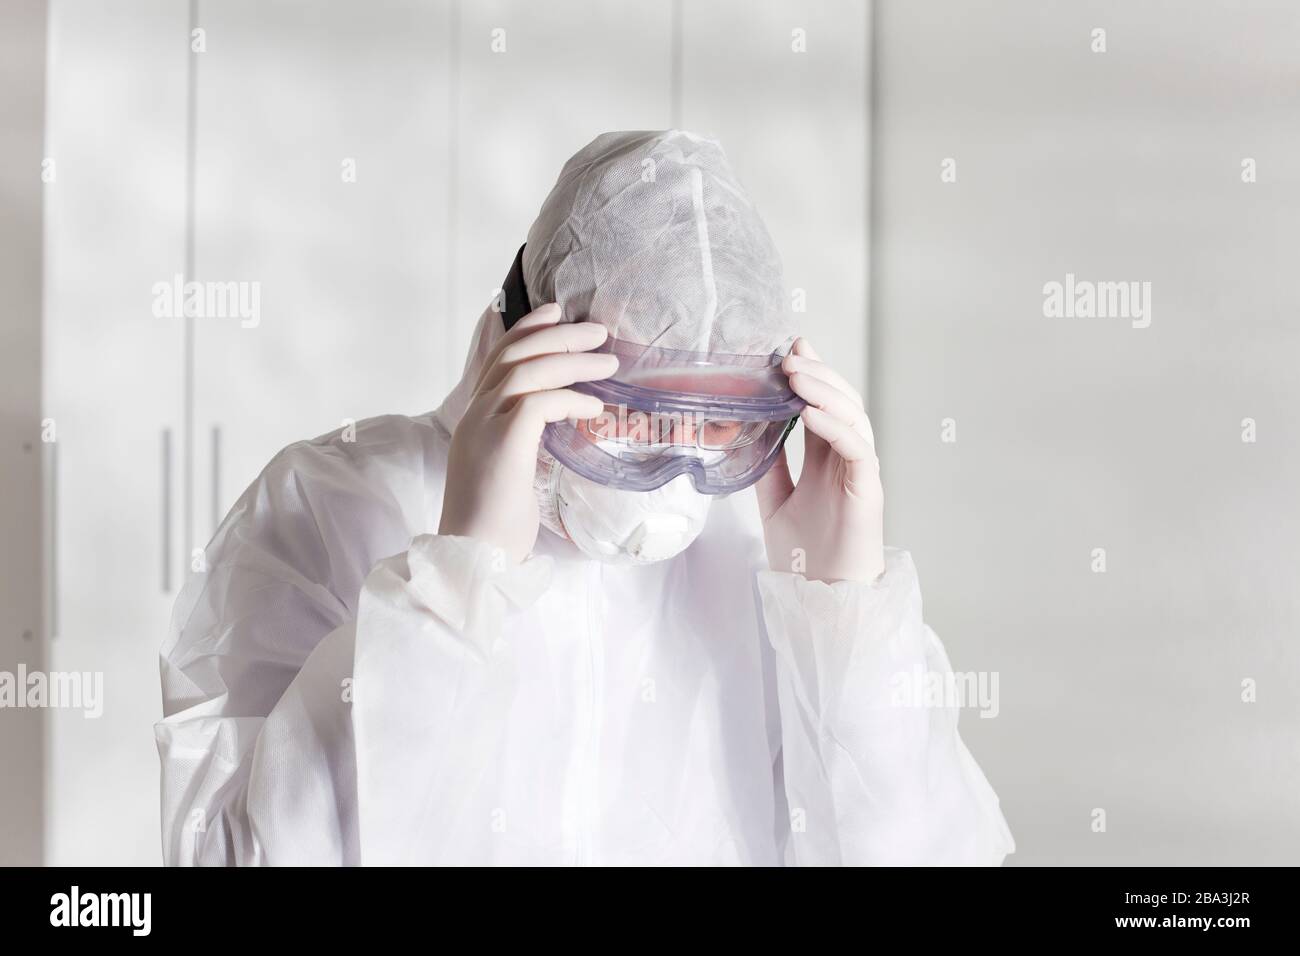 Müder Arzt mit Schutzkleidung wegen Coronavirus in einem Krankenhaus - hellweißer Hintergrund Stockfoto